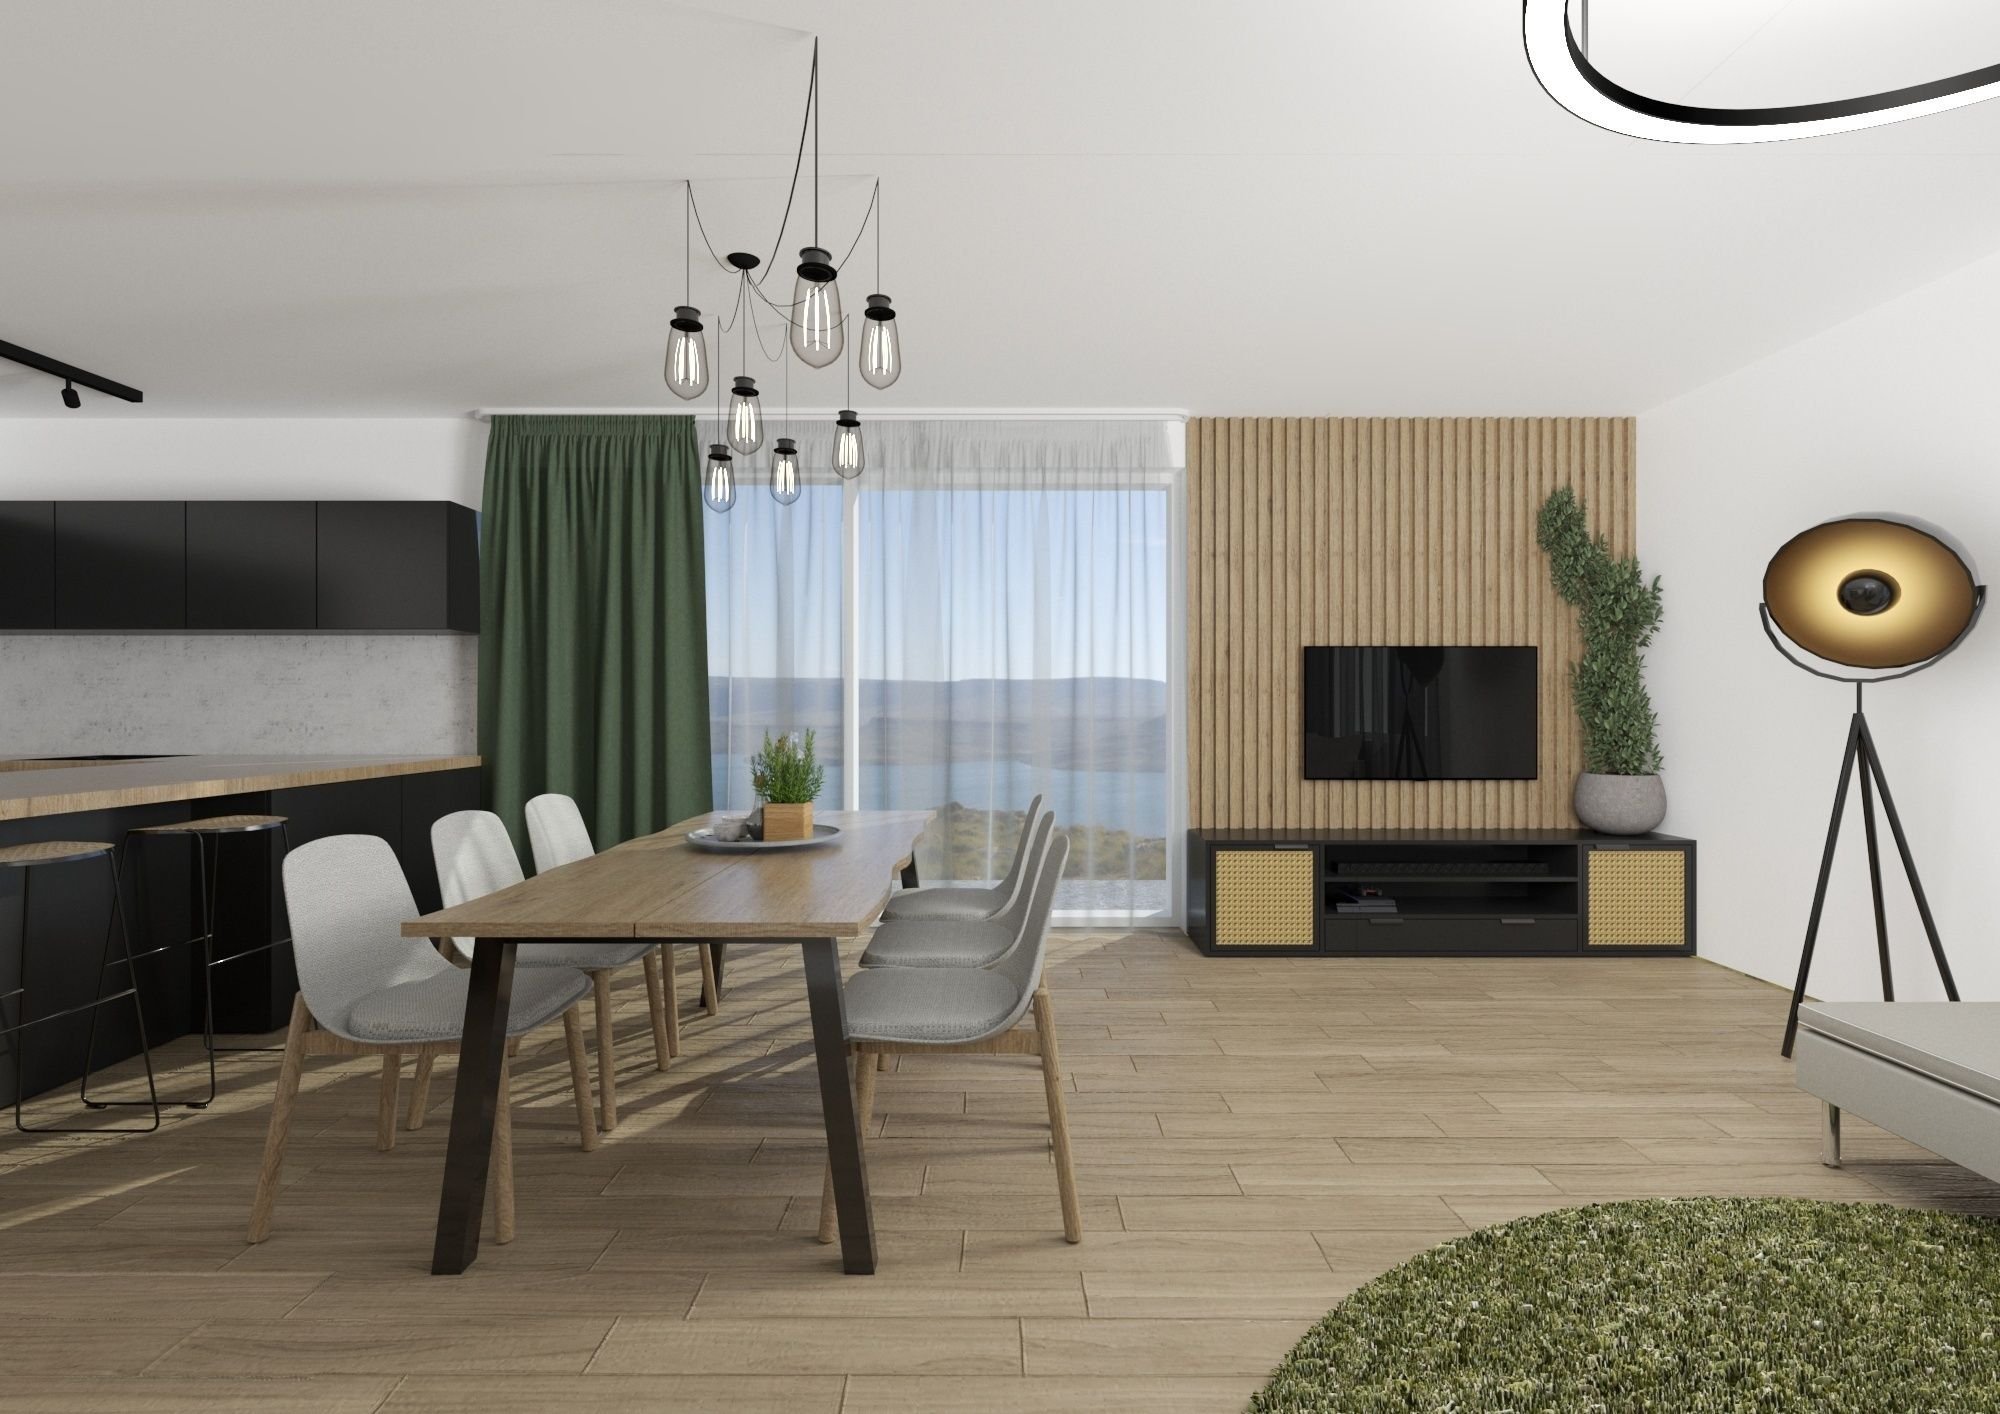 Mladý pár si zakoupil dům v&nbsp;developerském projektu nedaleko Brna, přičemž si majitelé původně s&nbsp;návrhem obývacího pokoje a jídelny chtěli poradit…